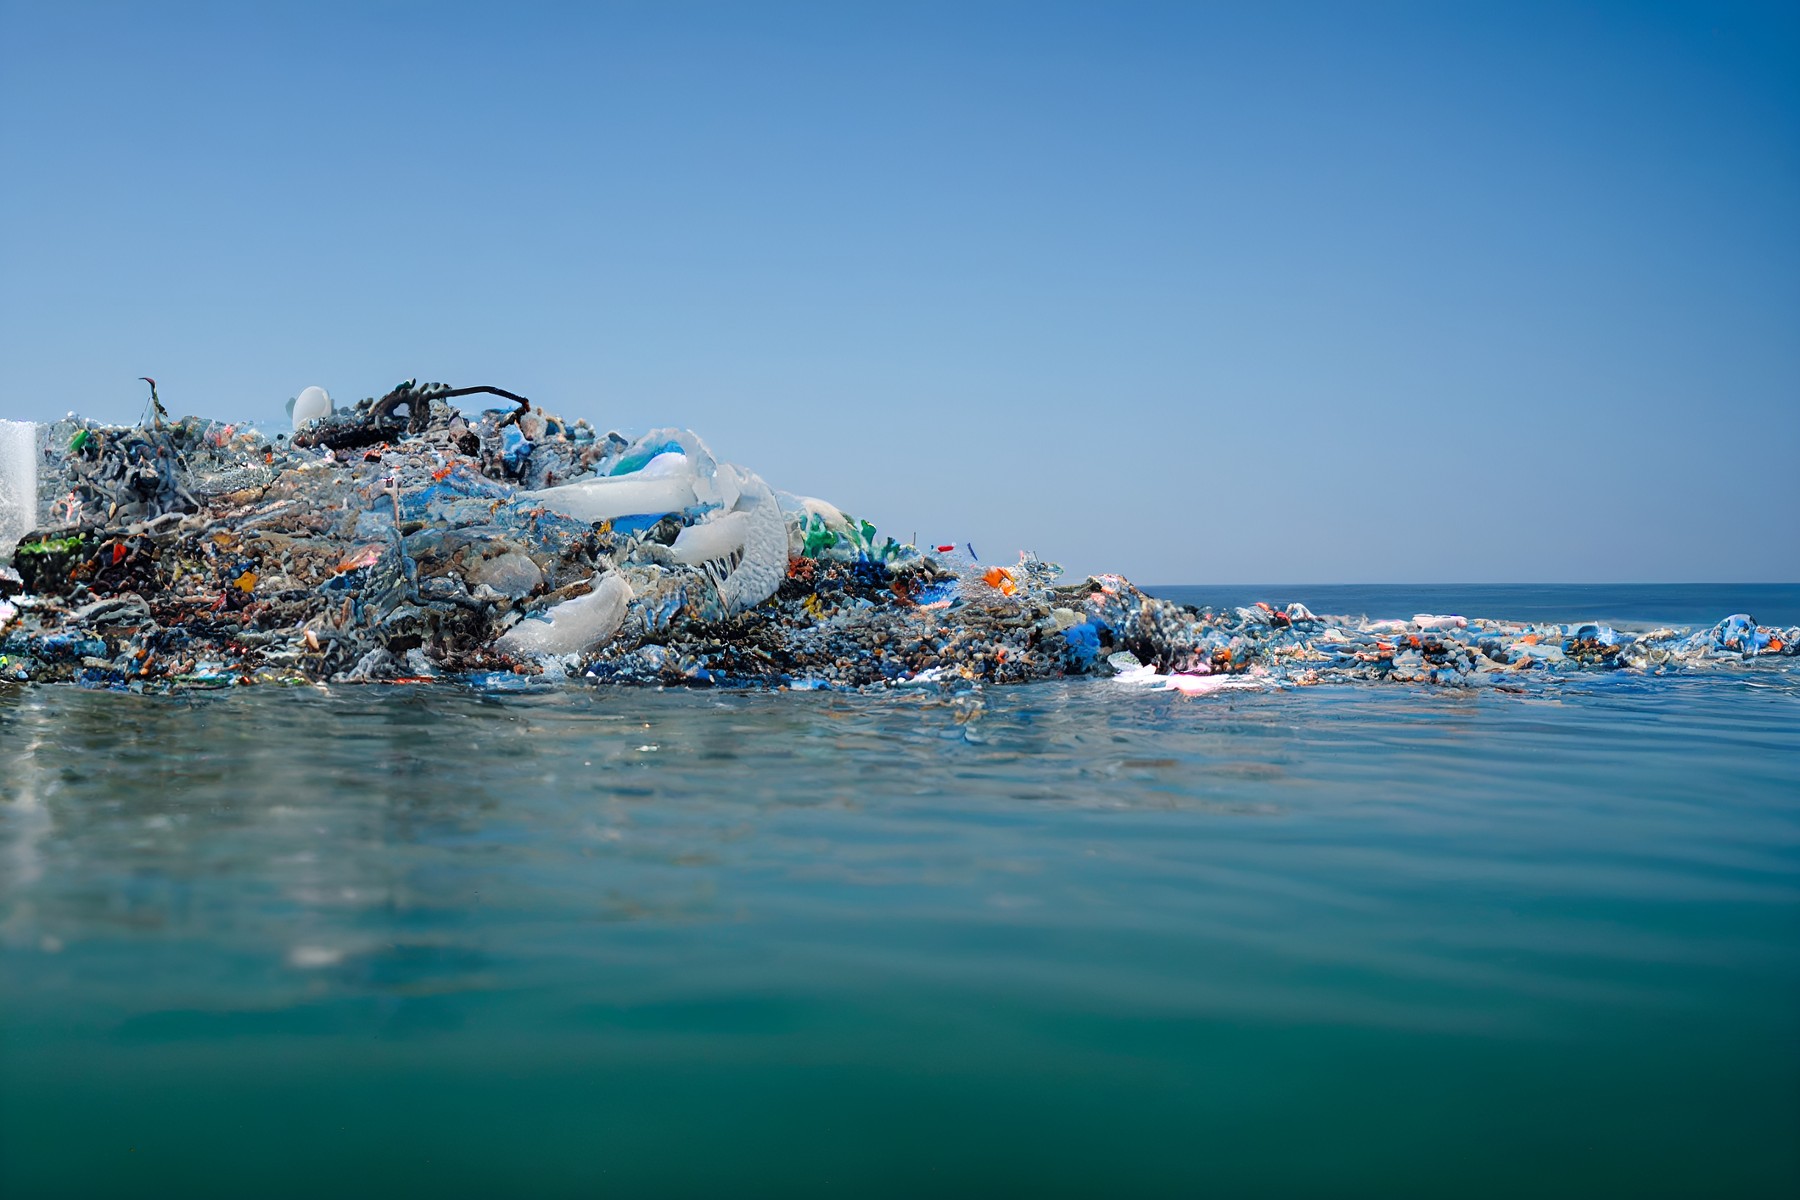 Los microplásticos provienen de su degradación en todos nuestros ecosistemas por la sobreproducción y mala gestión de estos desechos. - Foto mbala mbala merlin/Gettyimages